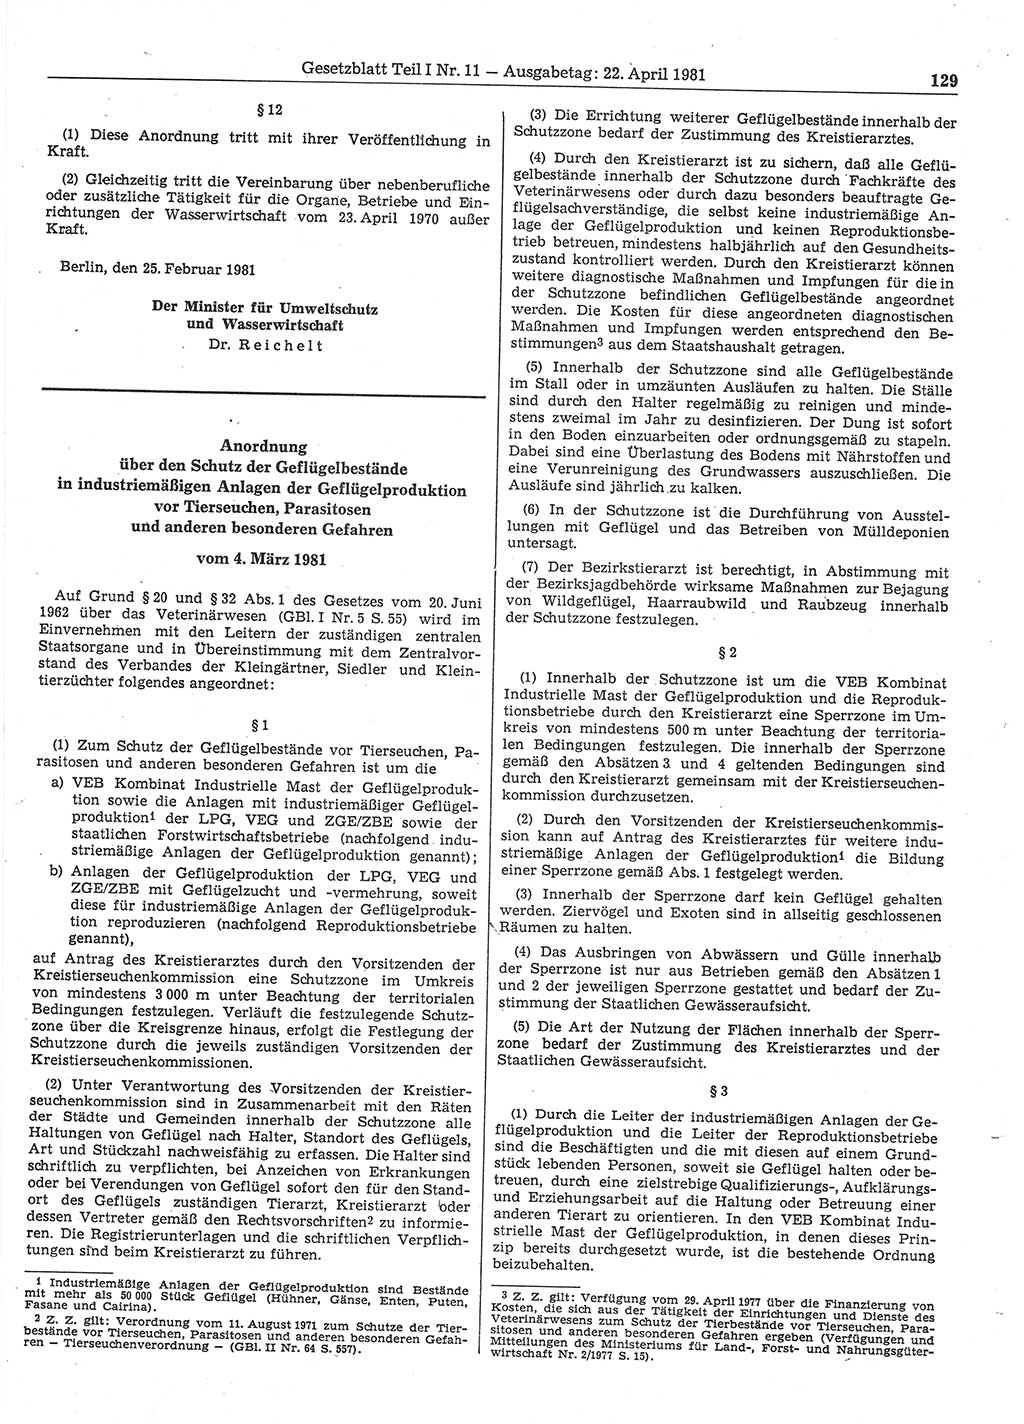 Gesetzblatt (GBl.) der Deutschen Demokratischen Republik (DDR) Teil Ⅰ 1981, Seite 129 (GBl. DDR Ⅰ 1981, S. 129)